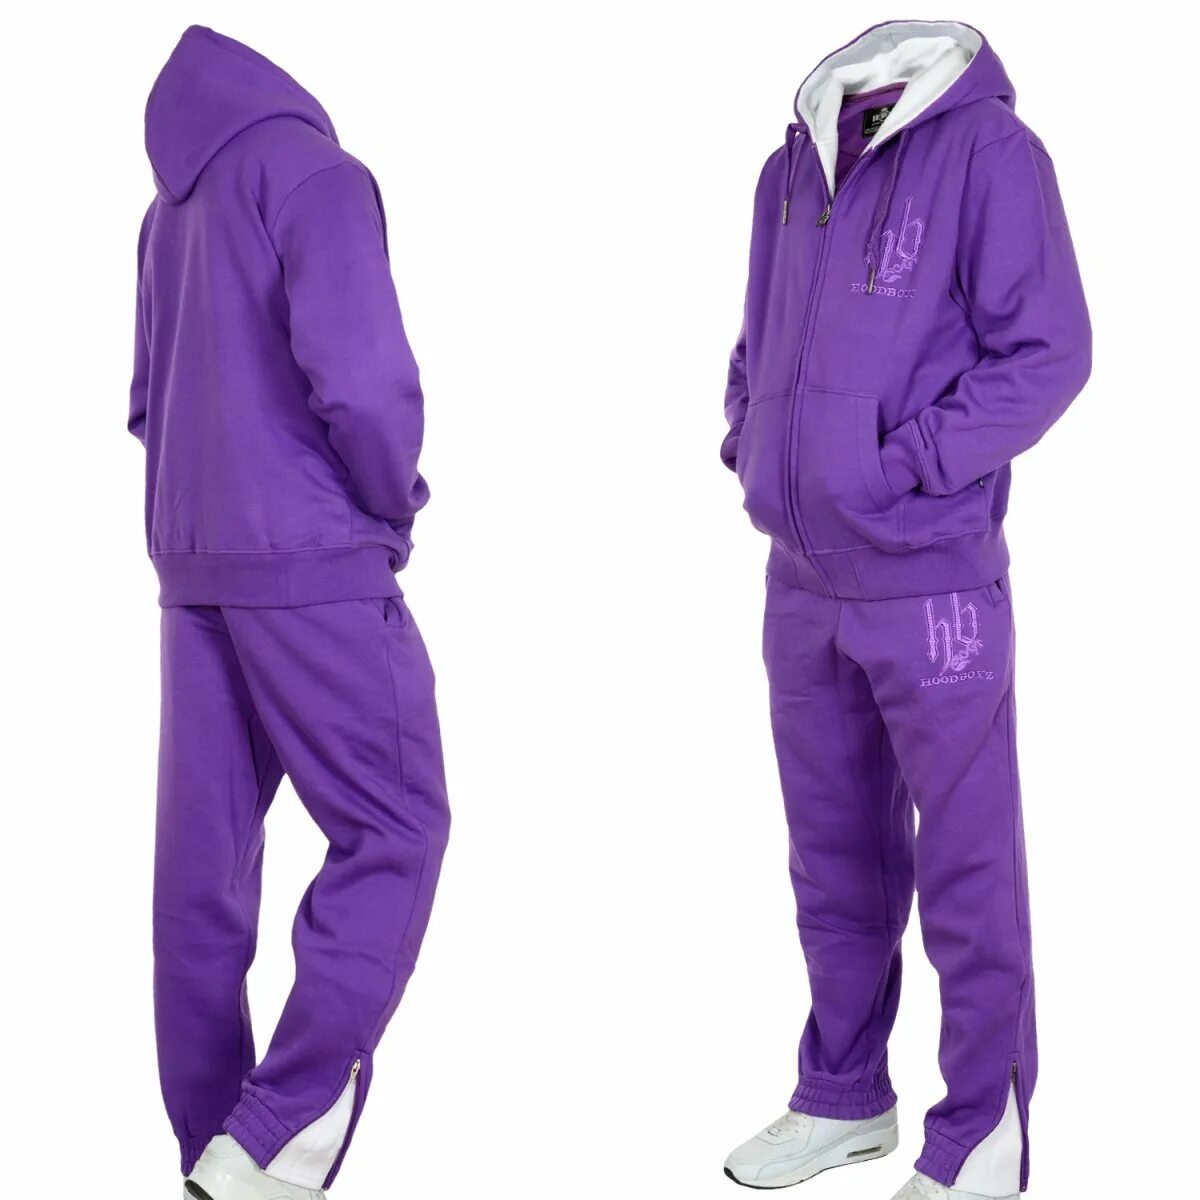 Валдберис спортивный костюм купить. Костюм Nike 2021 фиолетовый мужской. Спортивный костюм адидас женский фиолетовый. Фиолетовый спортивный костюм мужской рибок. Deha спортивный костюм фиолетовый.